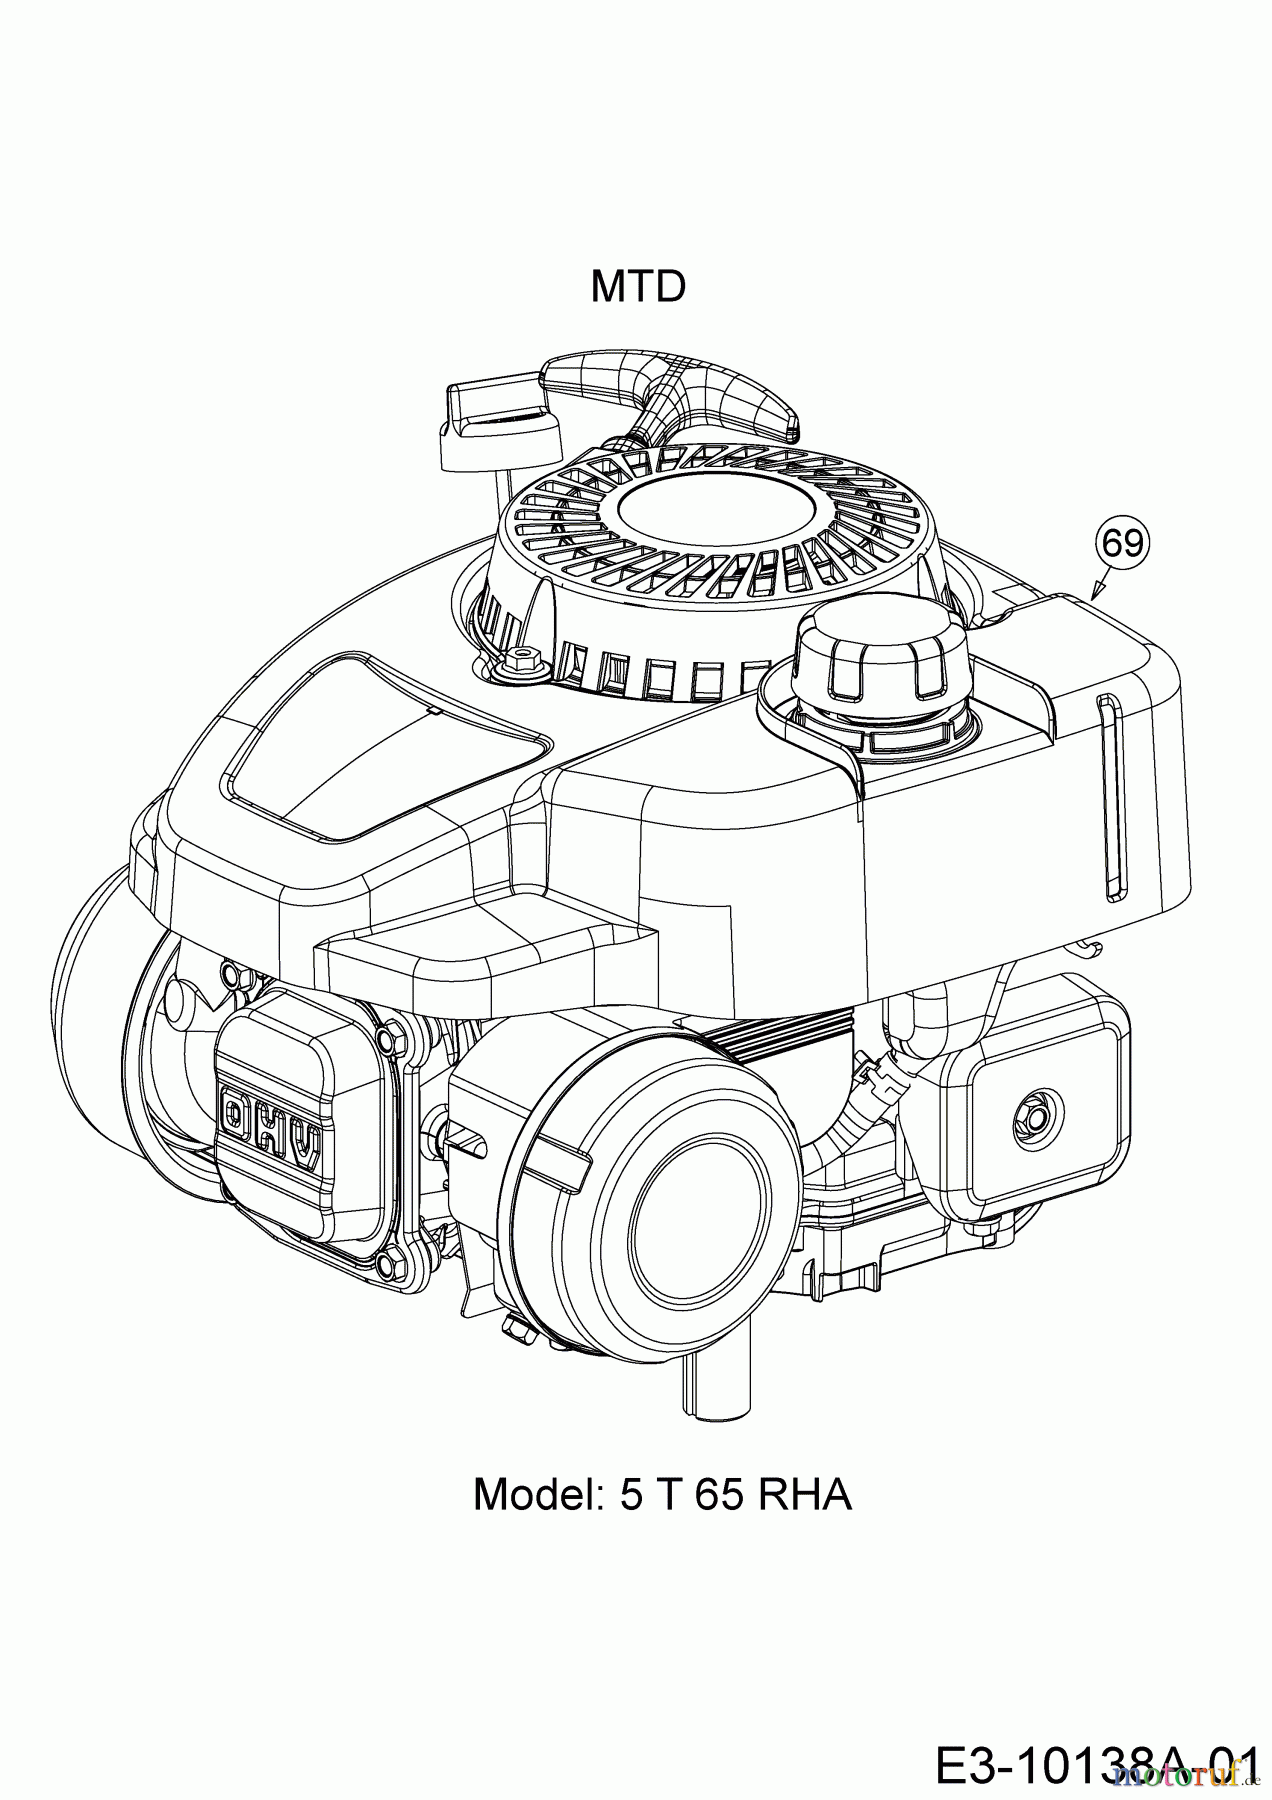  WOLF-Garten Expert Petrol mower Expert 420 11B-LUSC650  (2017) Engine MTD